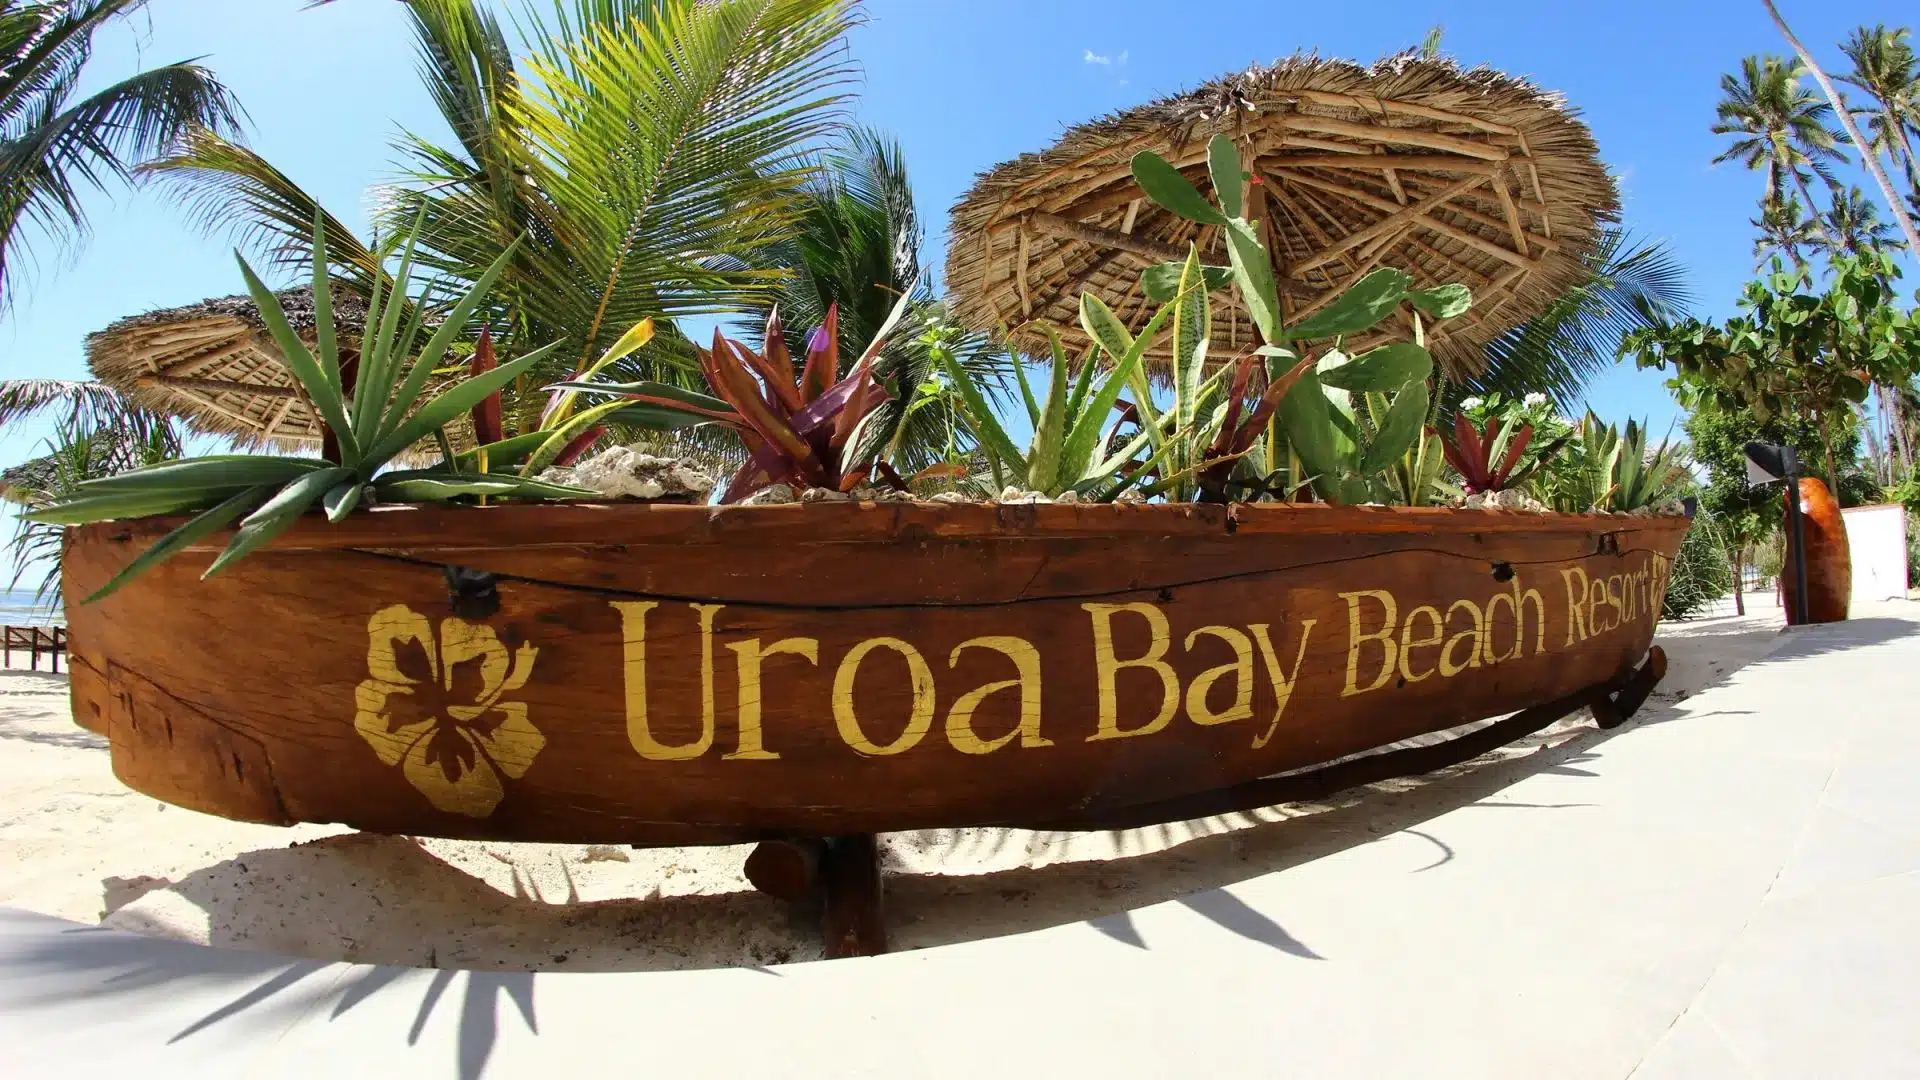 82 Uroa Bay Beach Resort